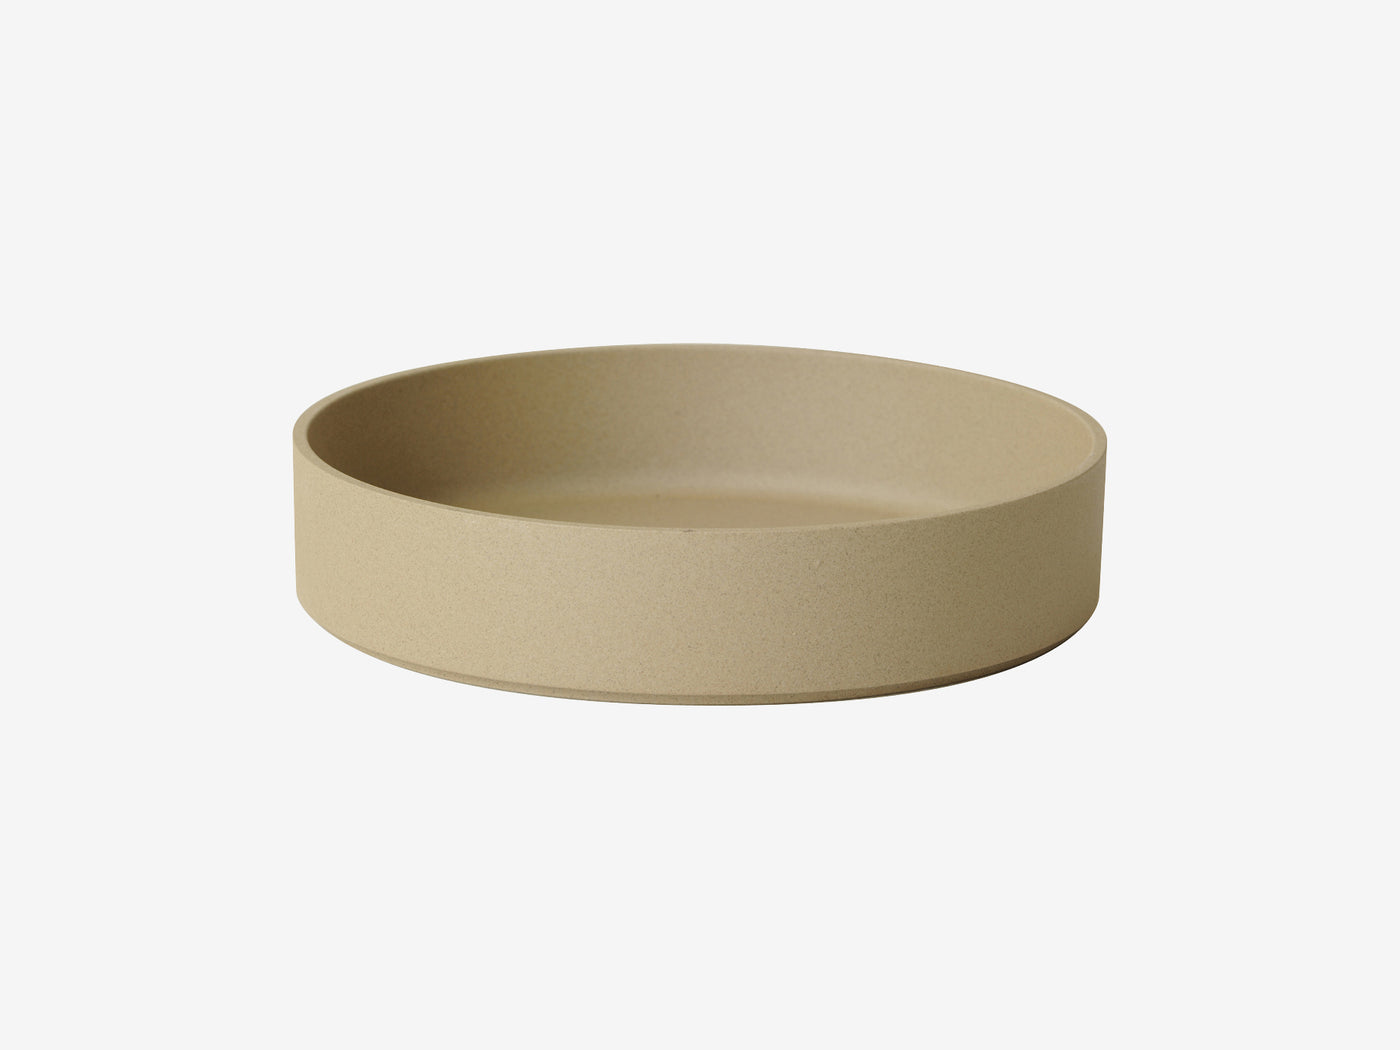 Hasami_hp011-25.5-bowl_Simple_Beautiful_Things